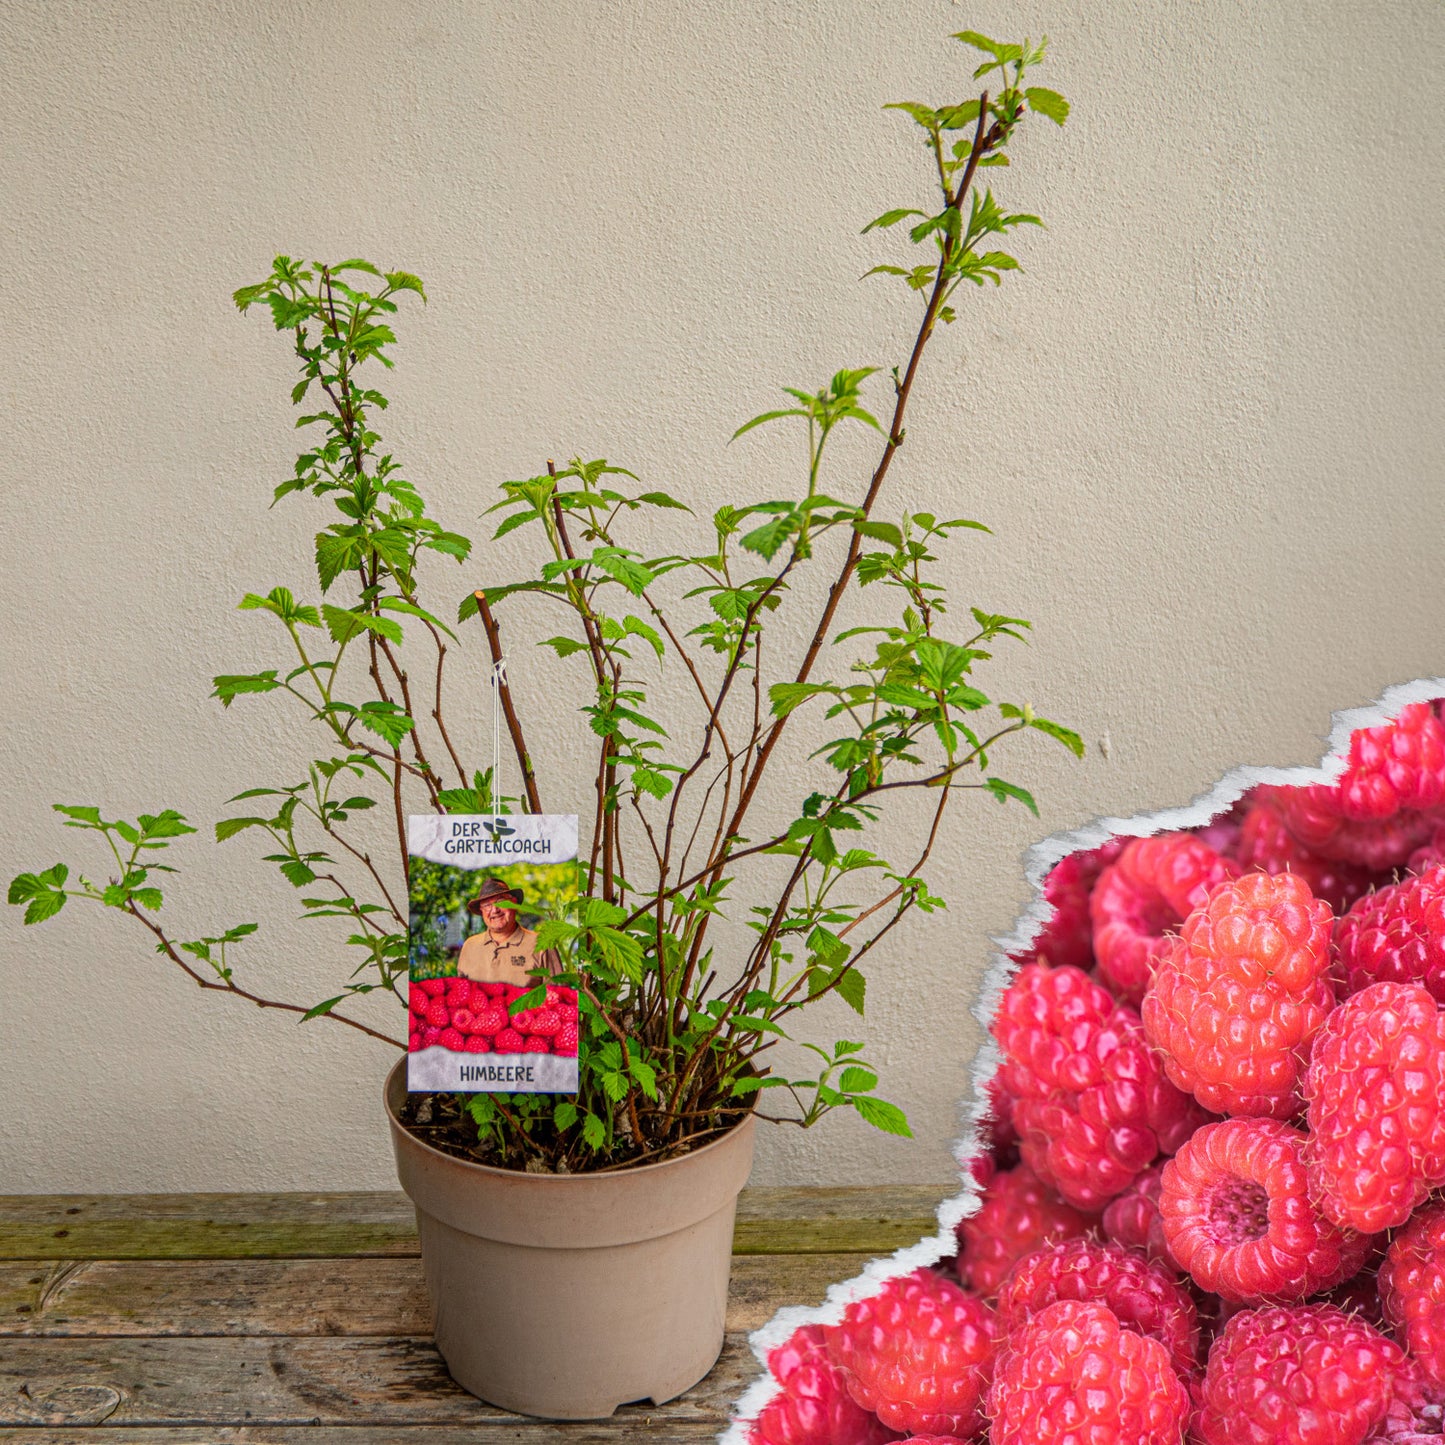 Himbeere "Der Gartencoach" - Rubus idaeus `Willamette' im 5-Liter-Topf